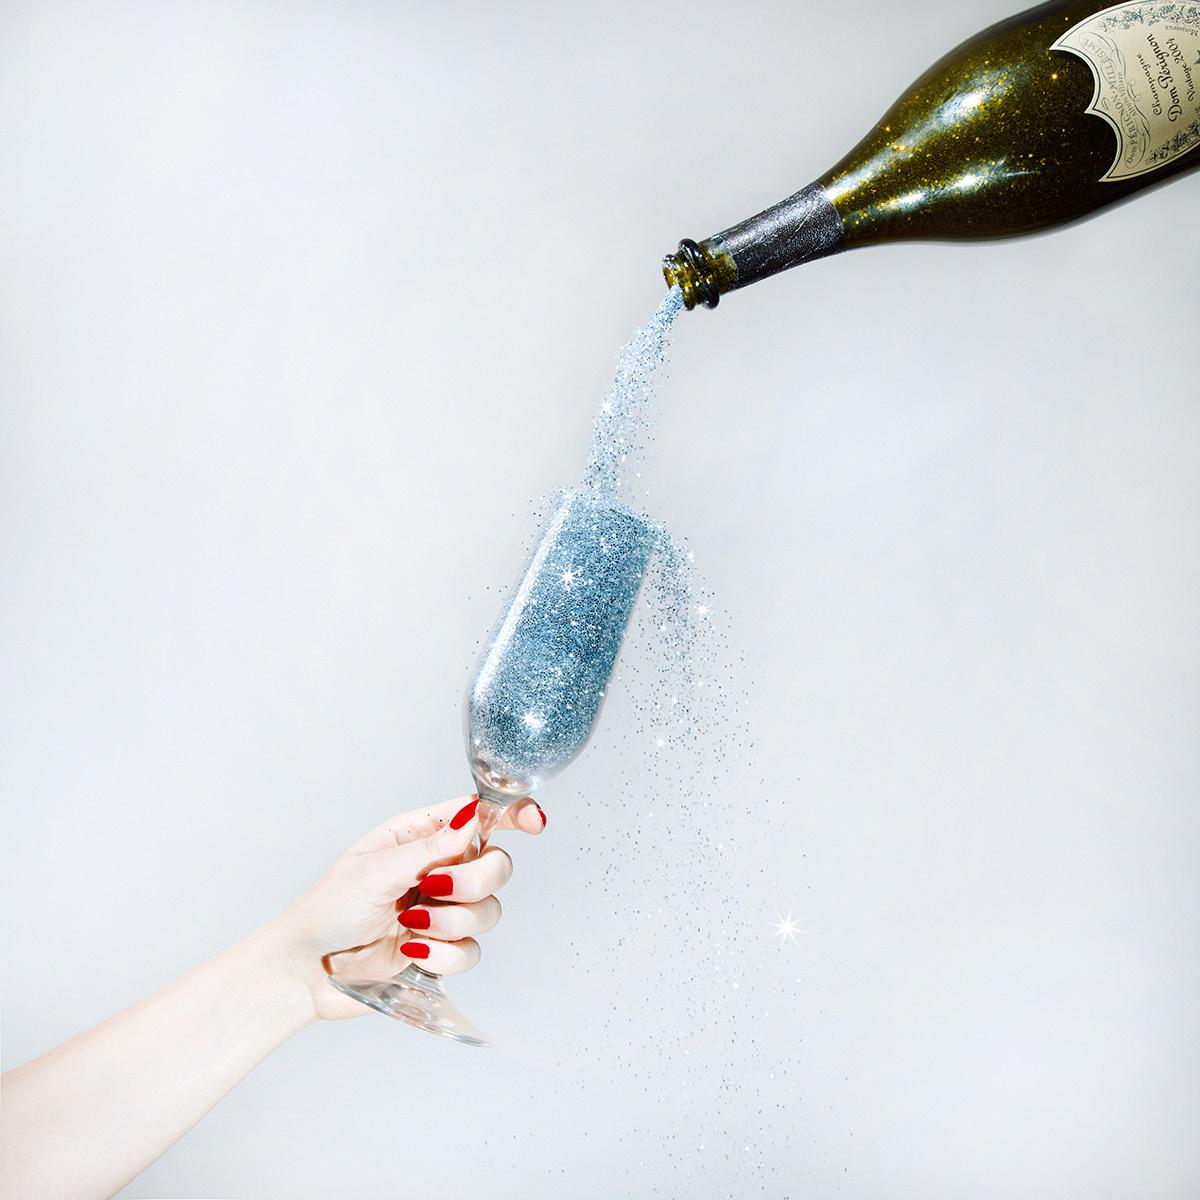 Tyler Shields - Champagne pailleté, photographie 2019